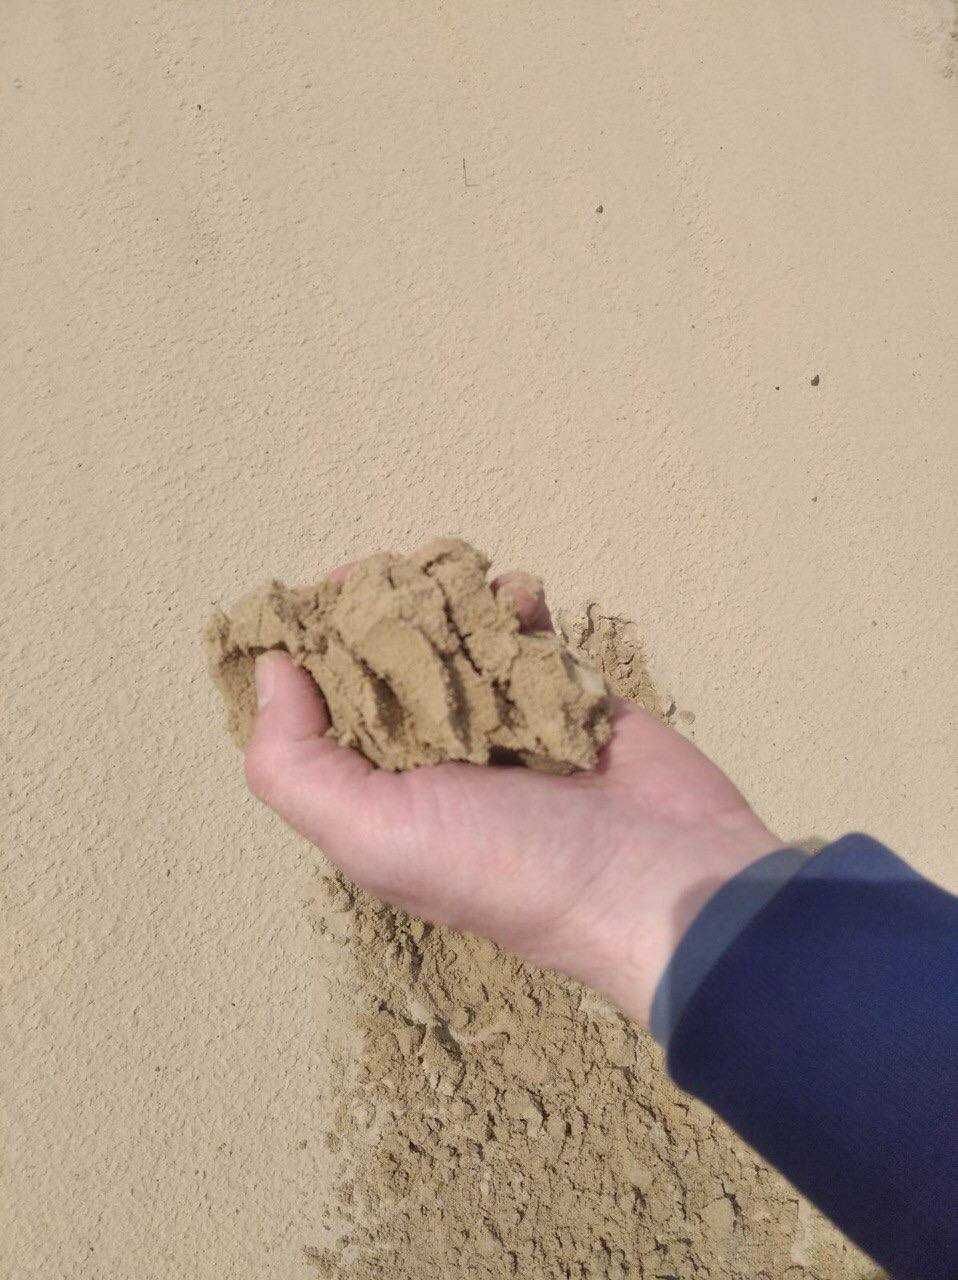 Преміум! щебень, песок, пісок, керамзит, отсев, грунт